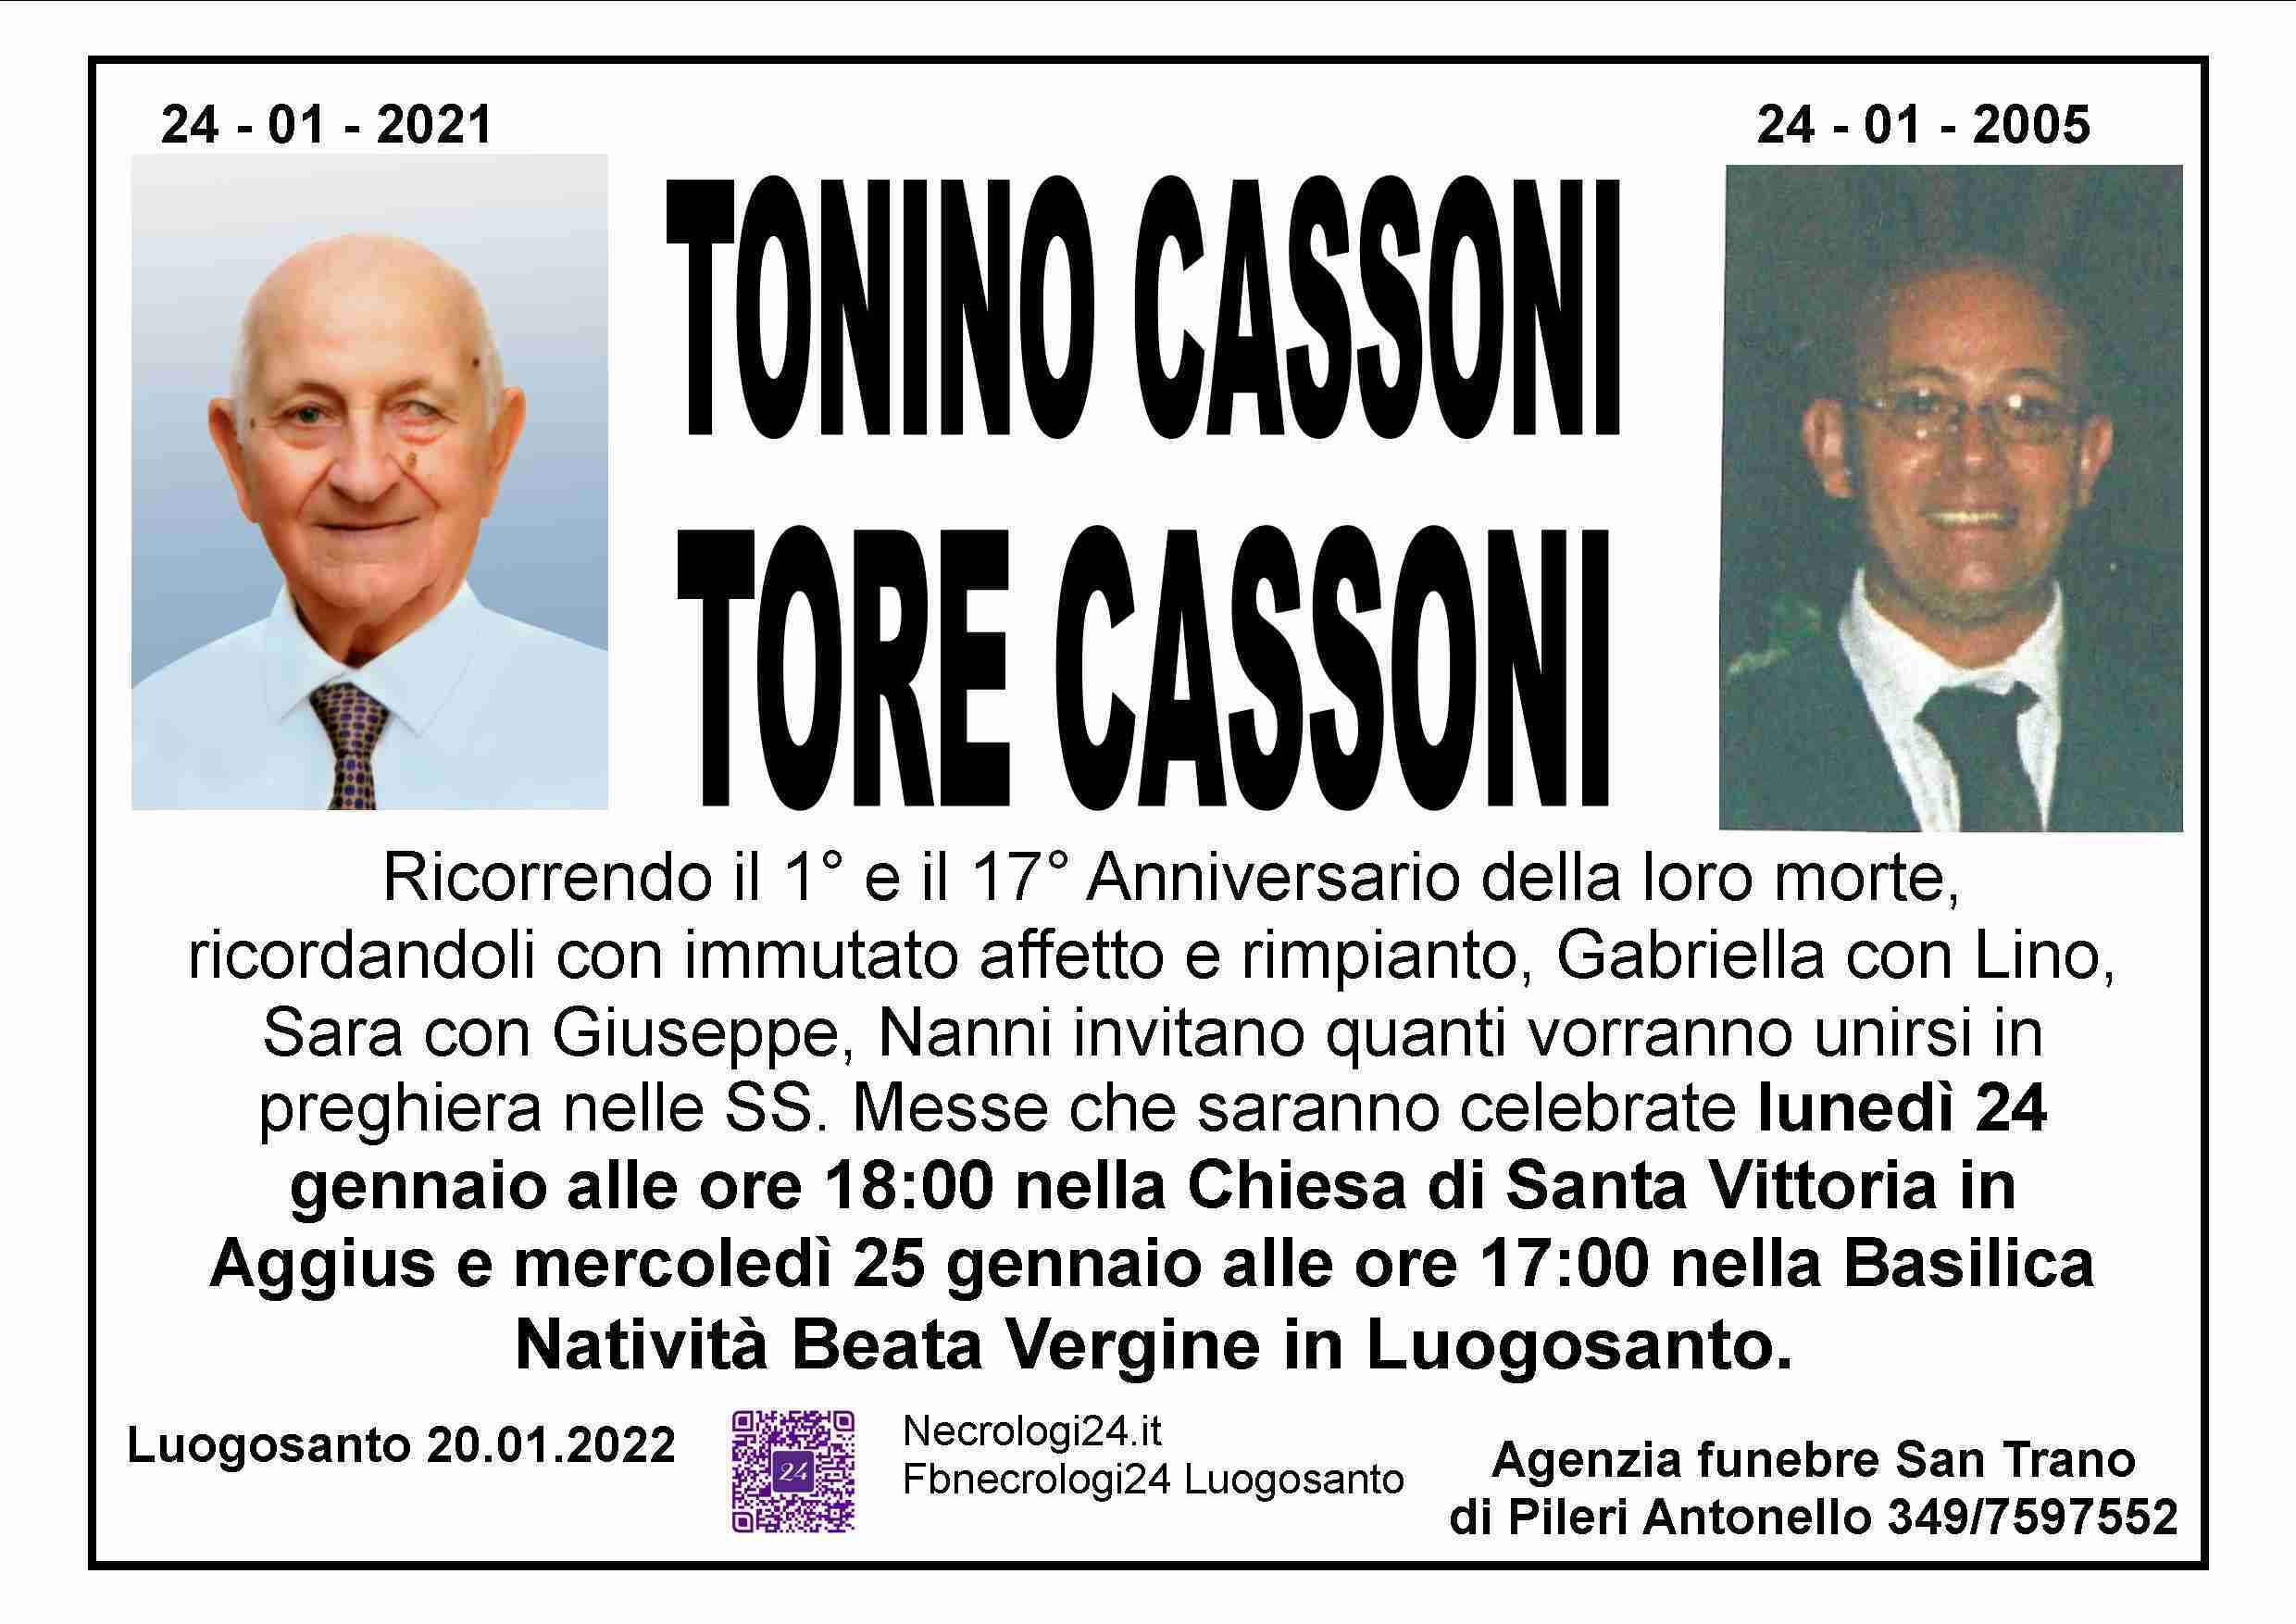 Tonino Cassoni e Tore Cassoni